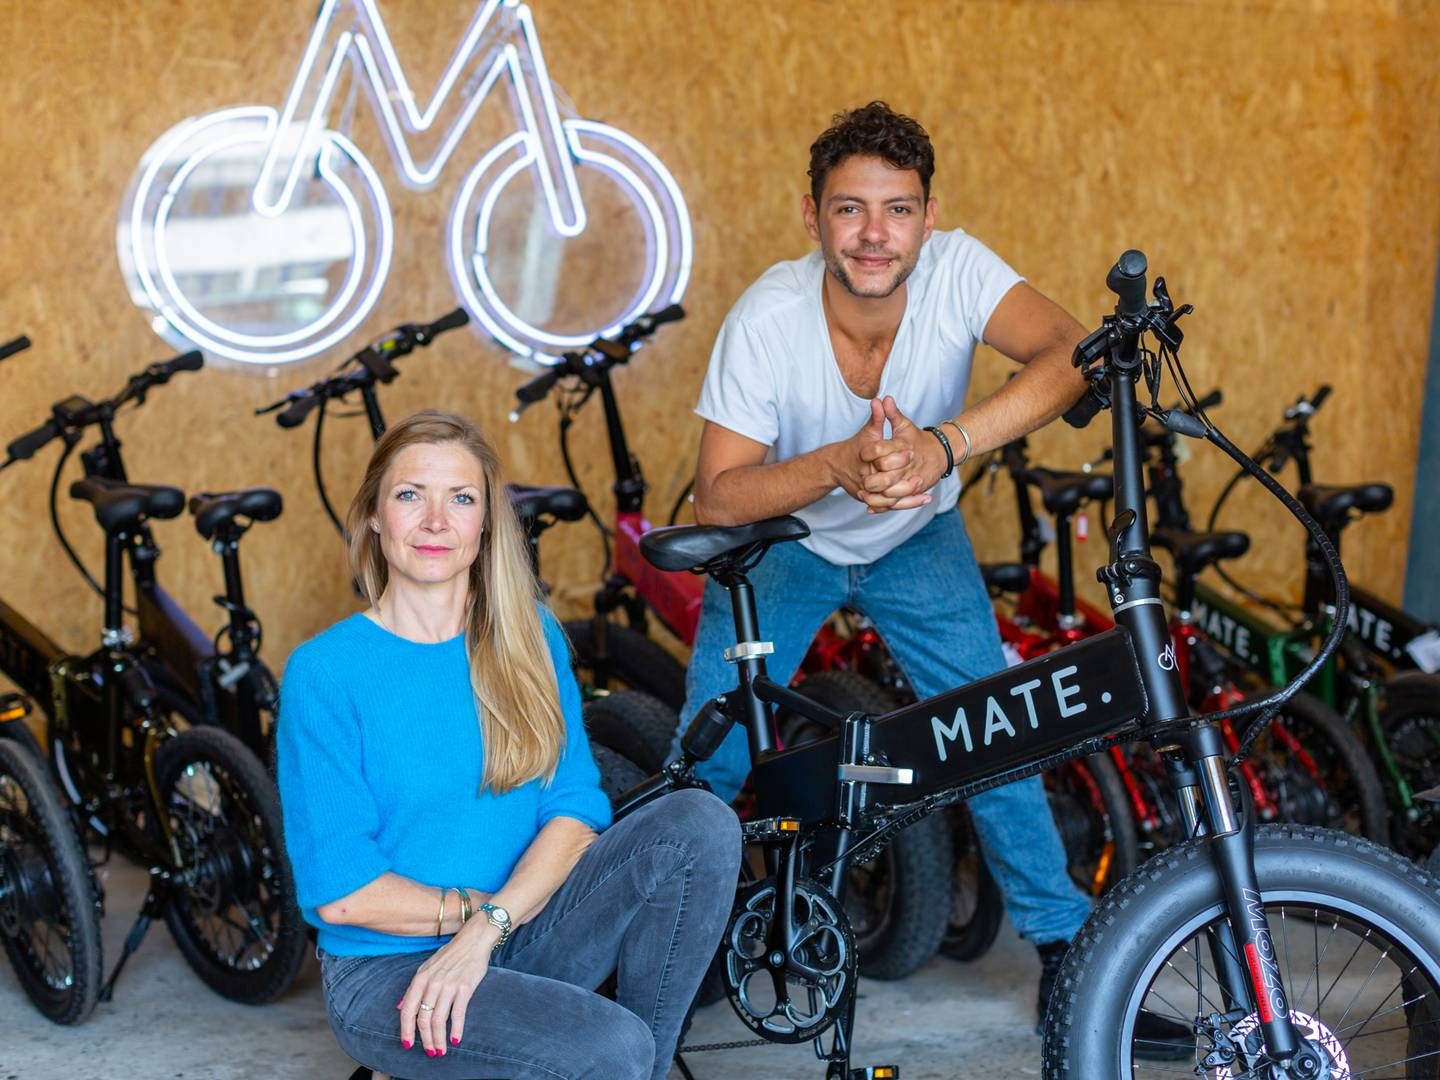 Mate Bike er stiftet af søskendeparret Julie Kronstrøm Carton og Christian Adel Michael. | Foto: Prmatebike